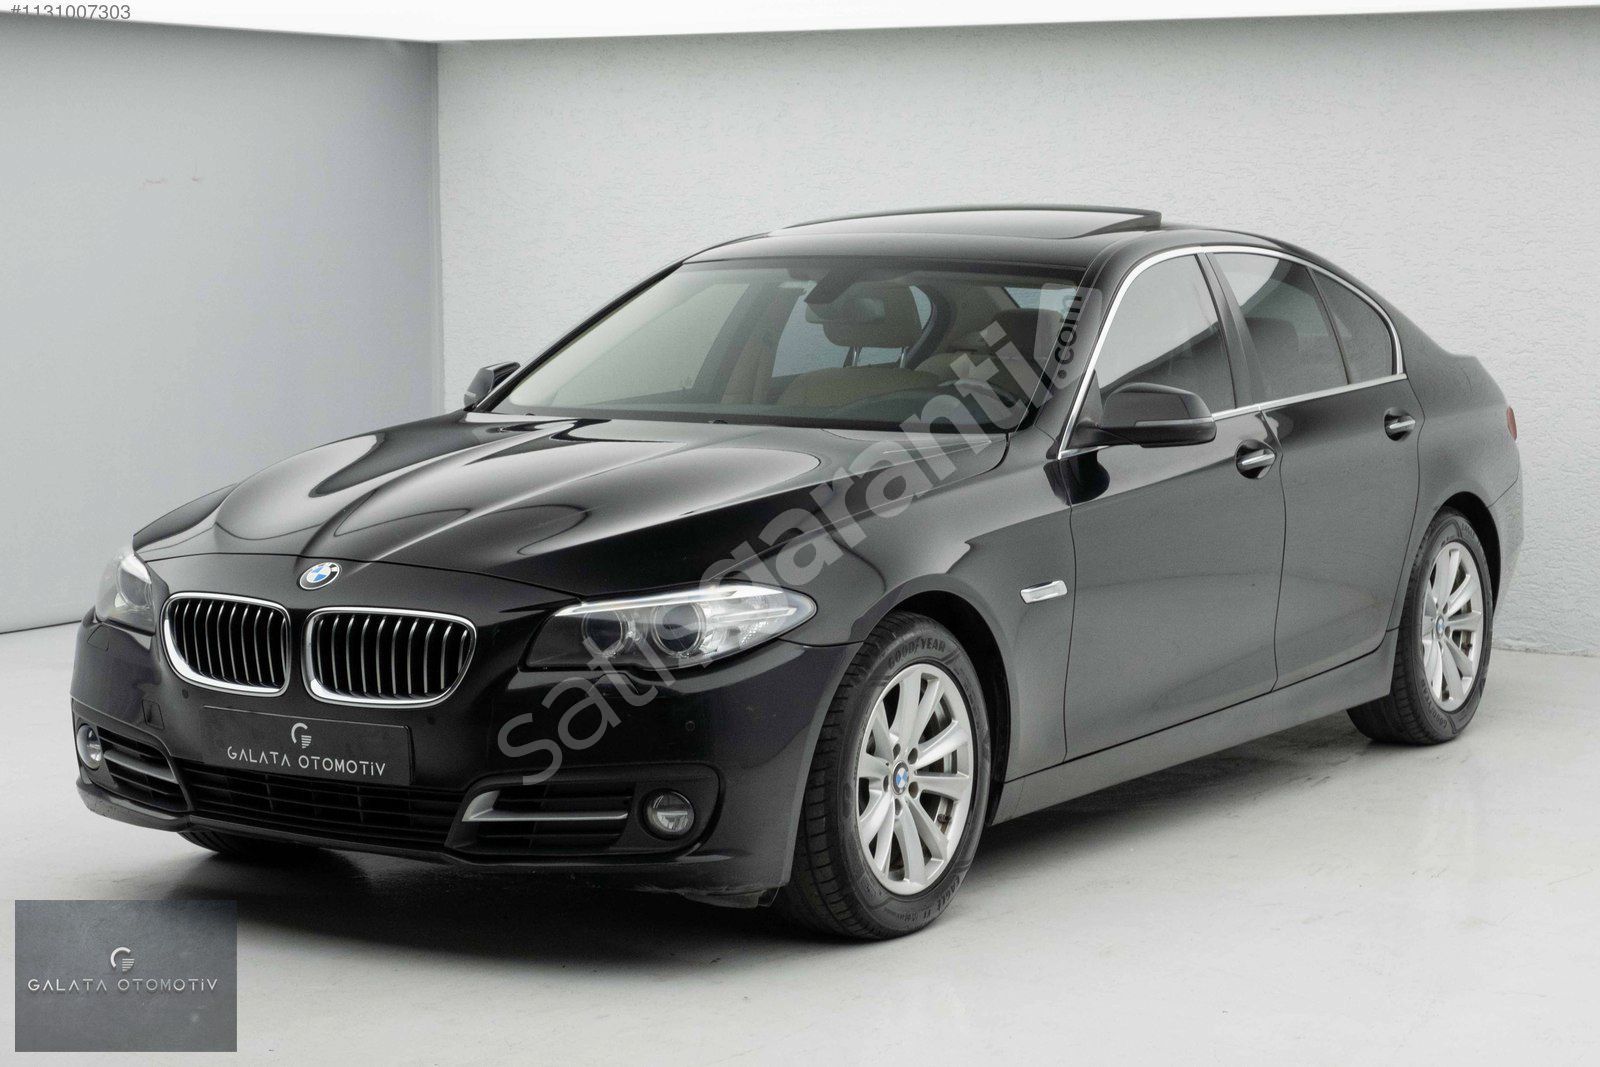 'GALATA' 2014 BMW F10 LCİ 520D COMFORT